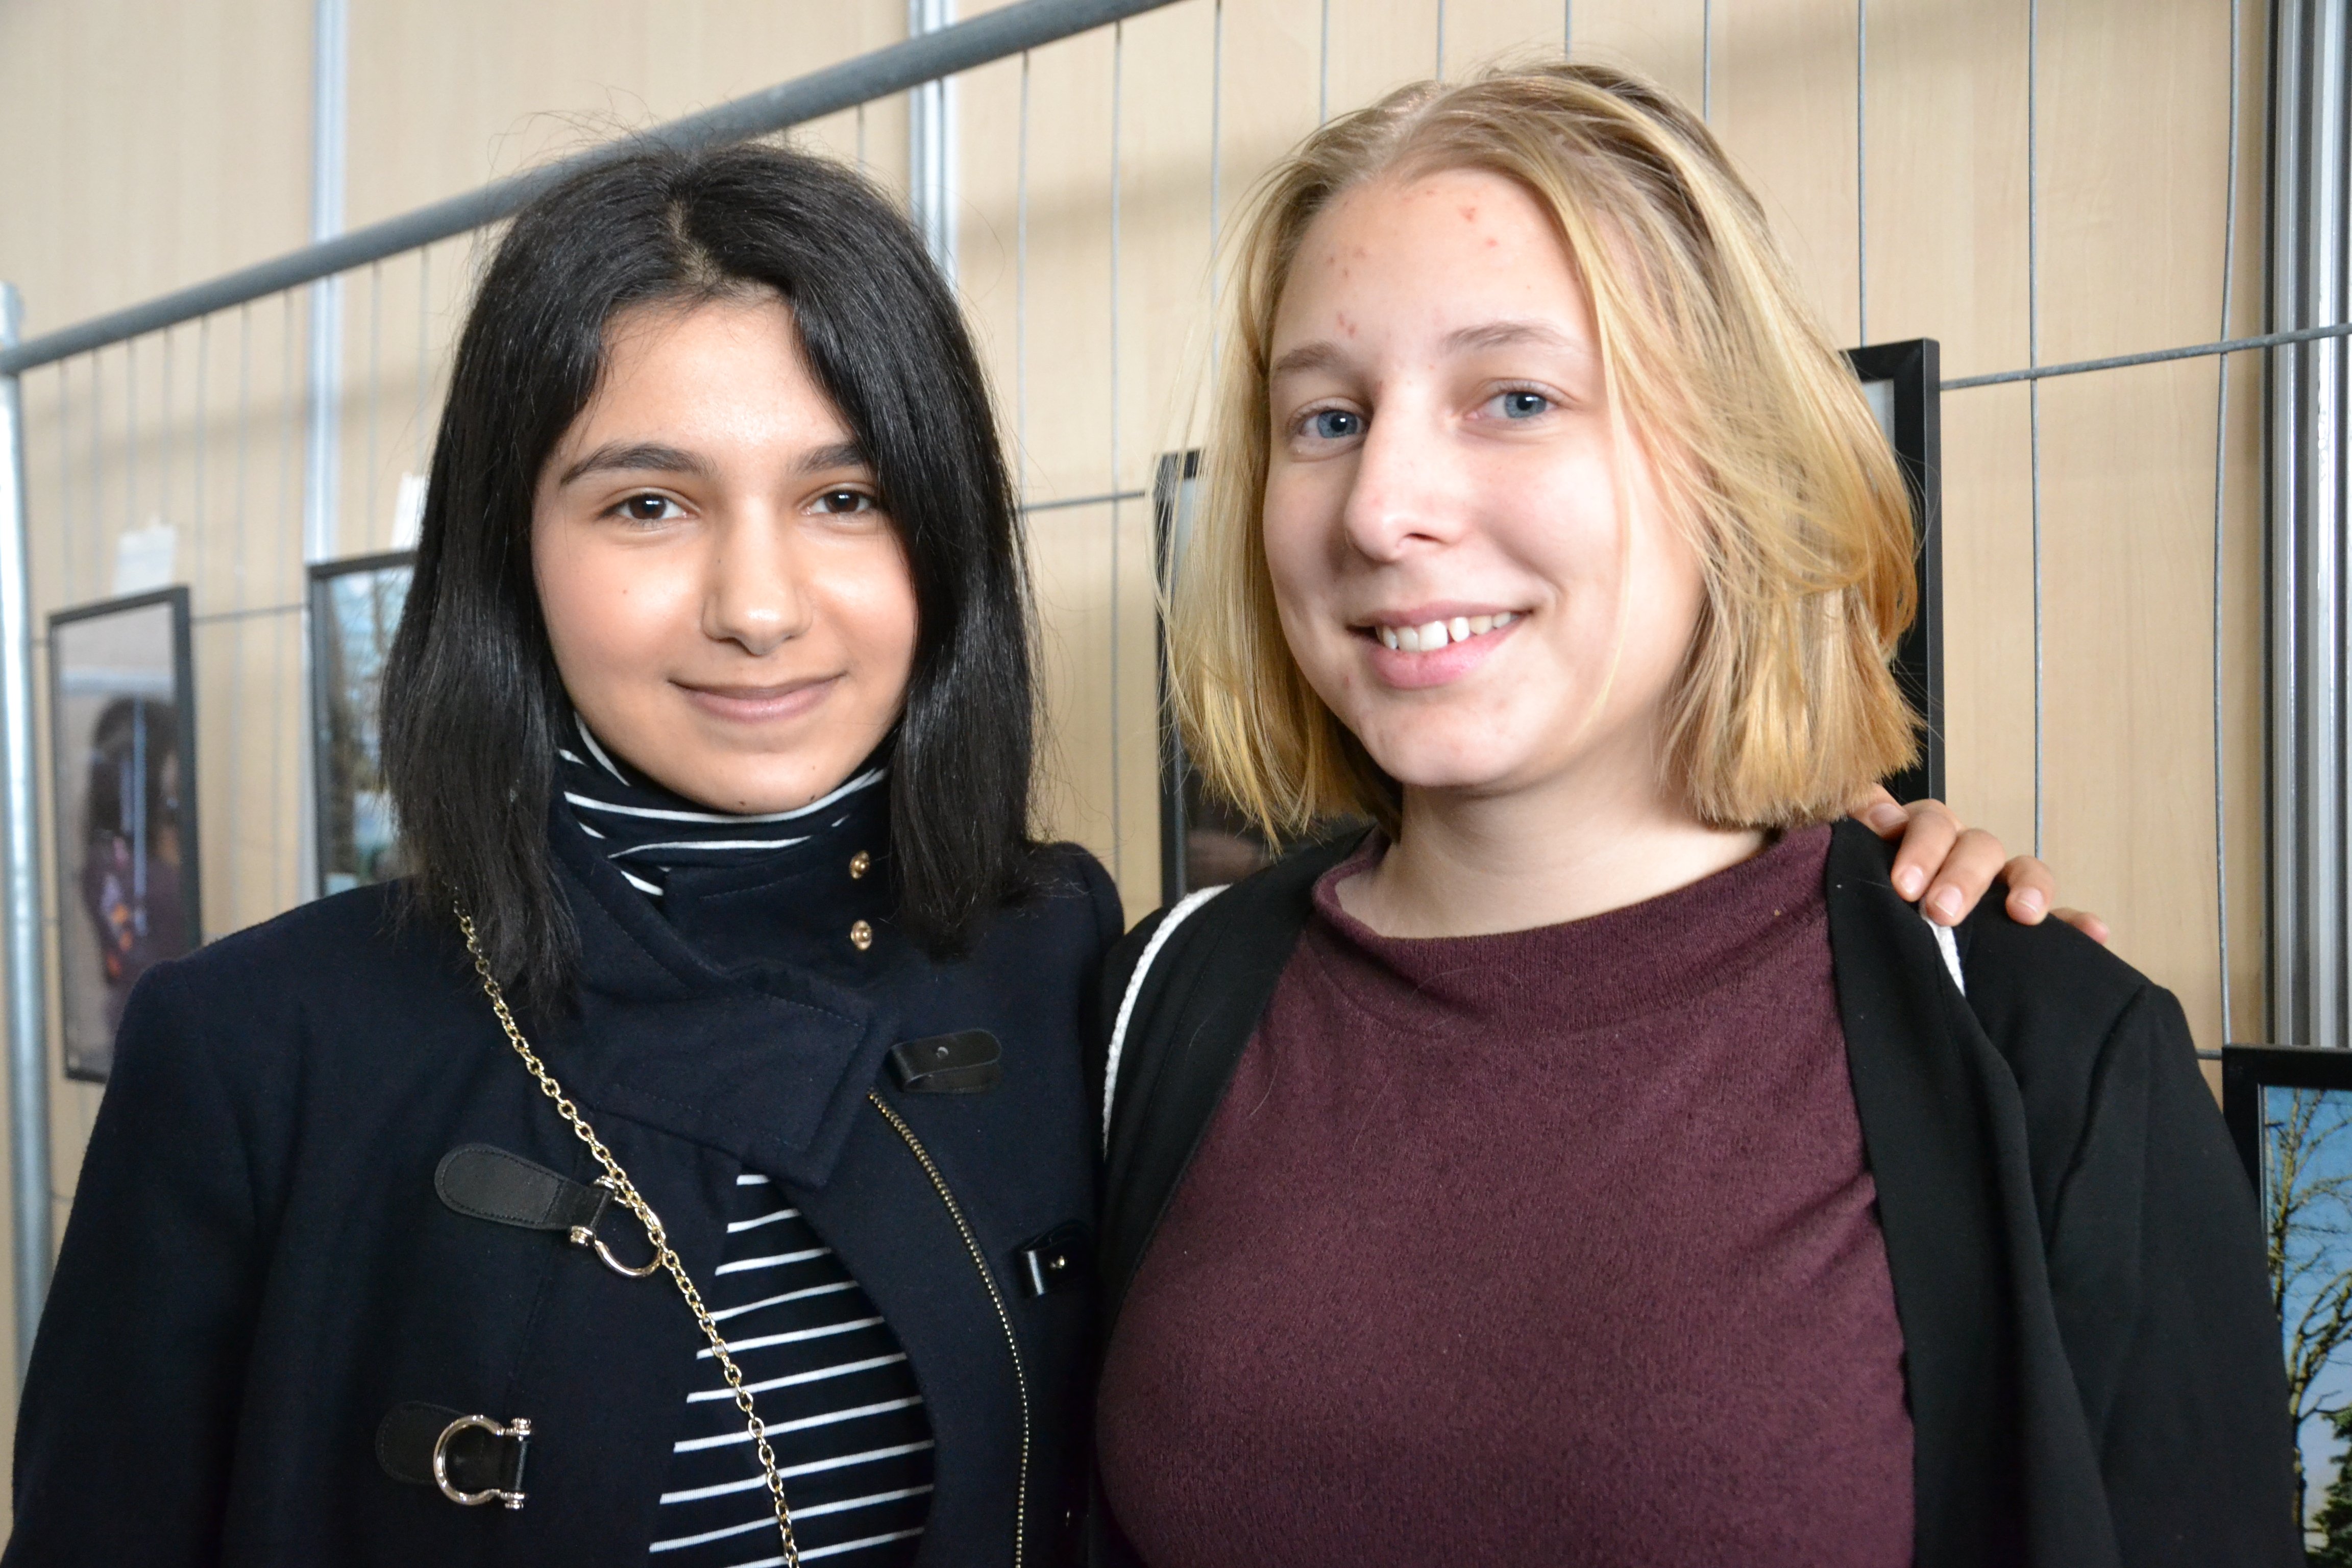 Zainab et Linnéa, deux lycéennes venues de Suède pour participer à la COP21. © Estelle Faure